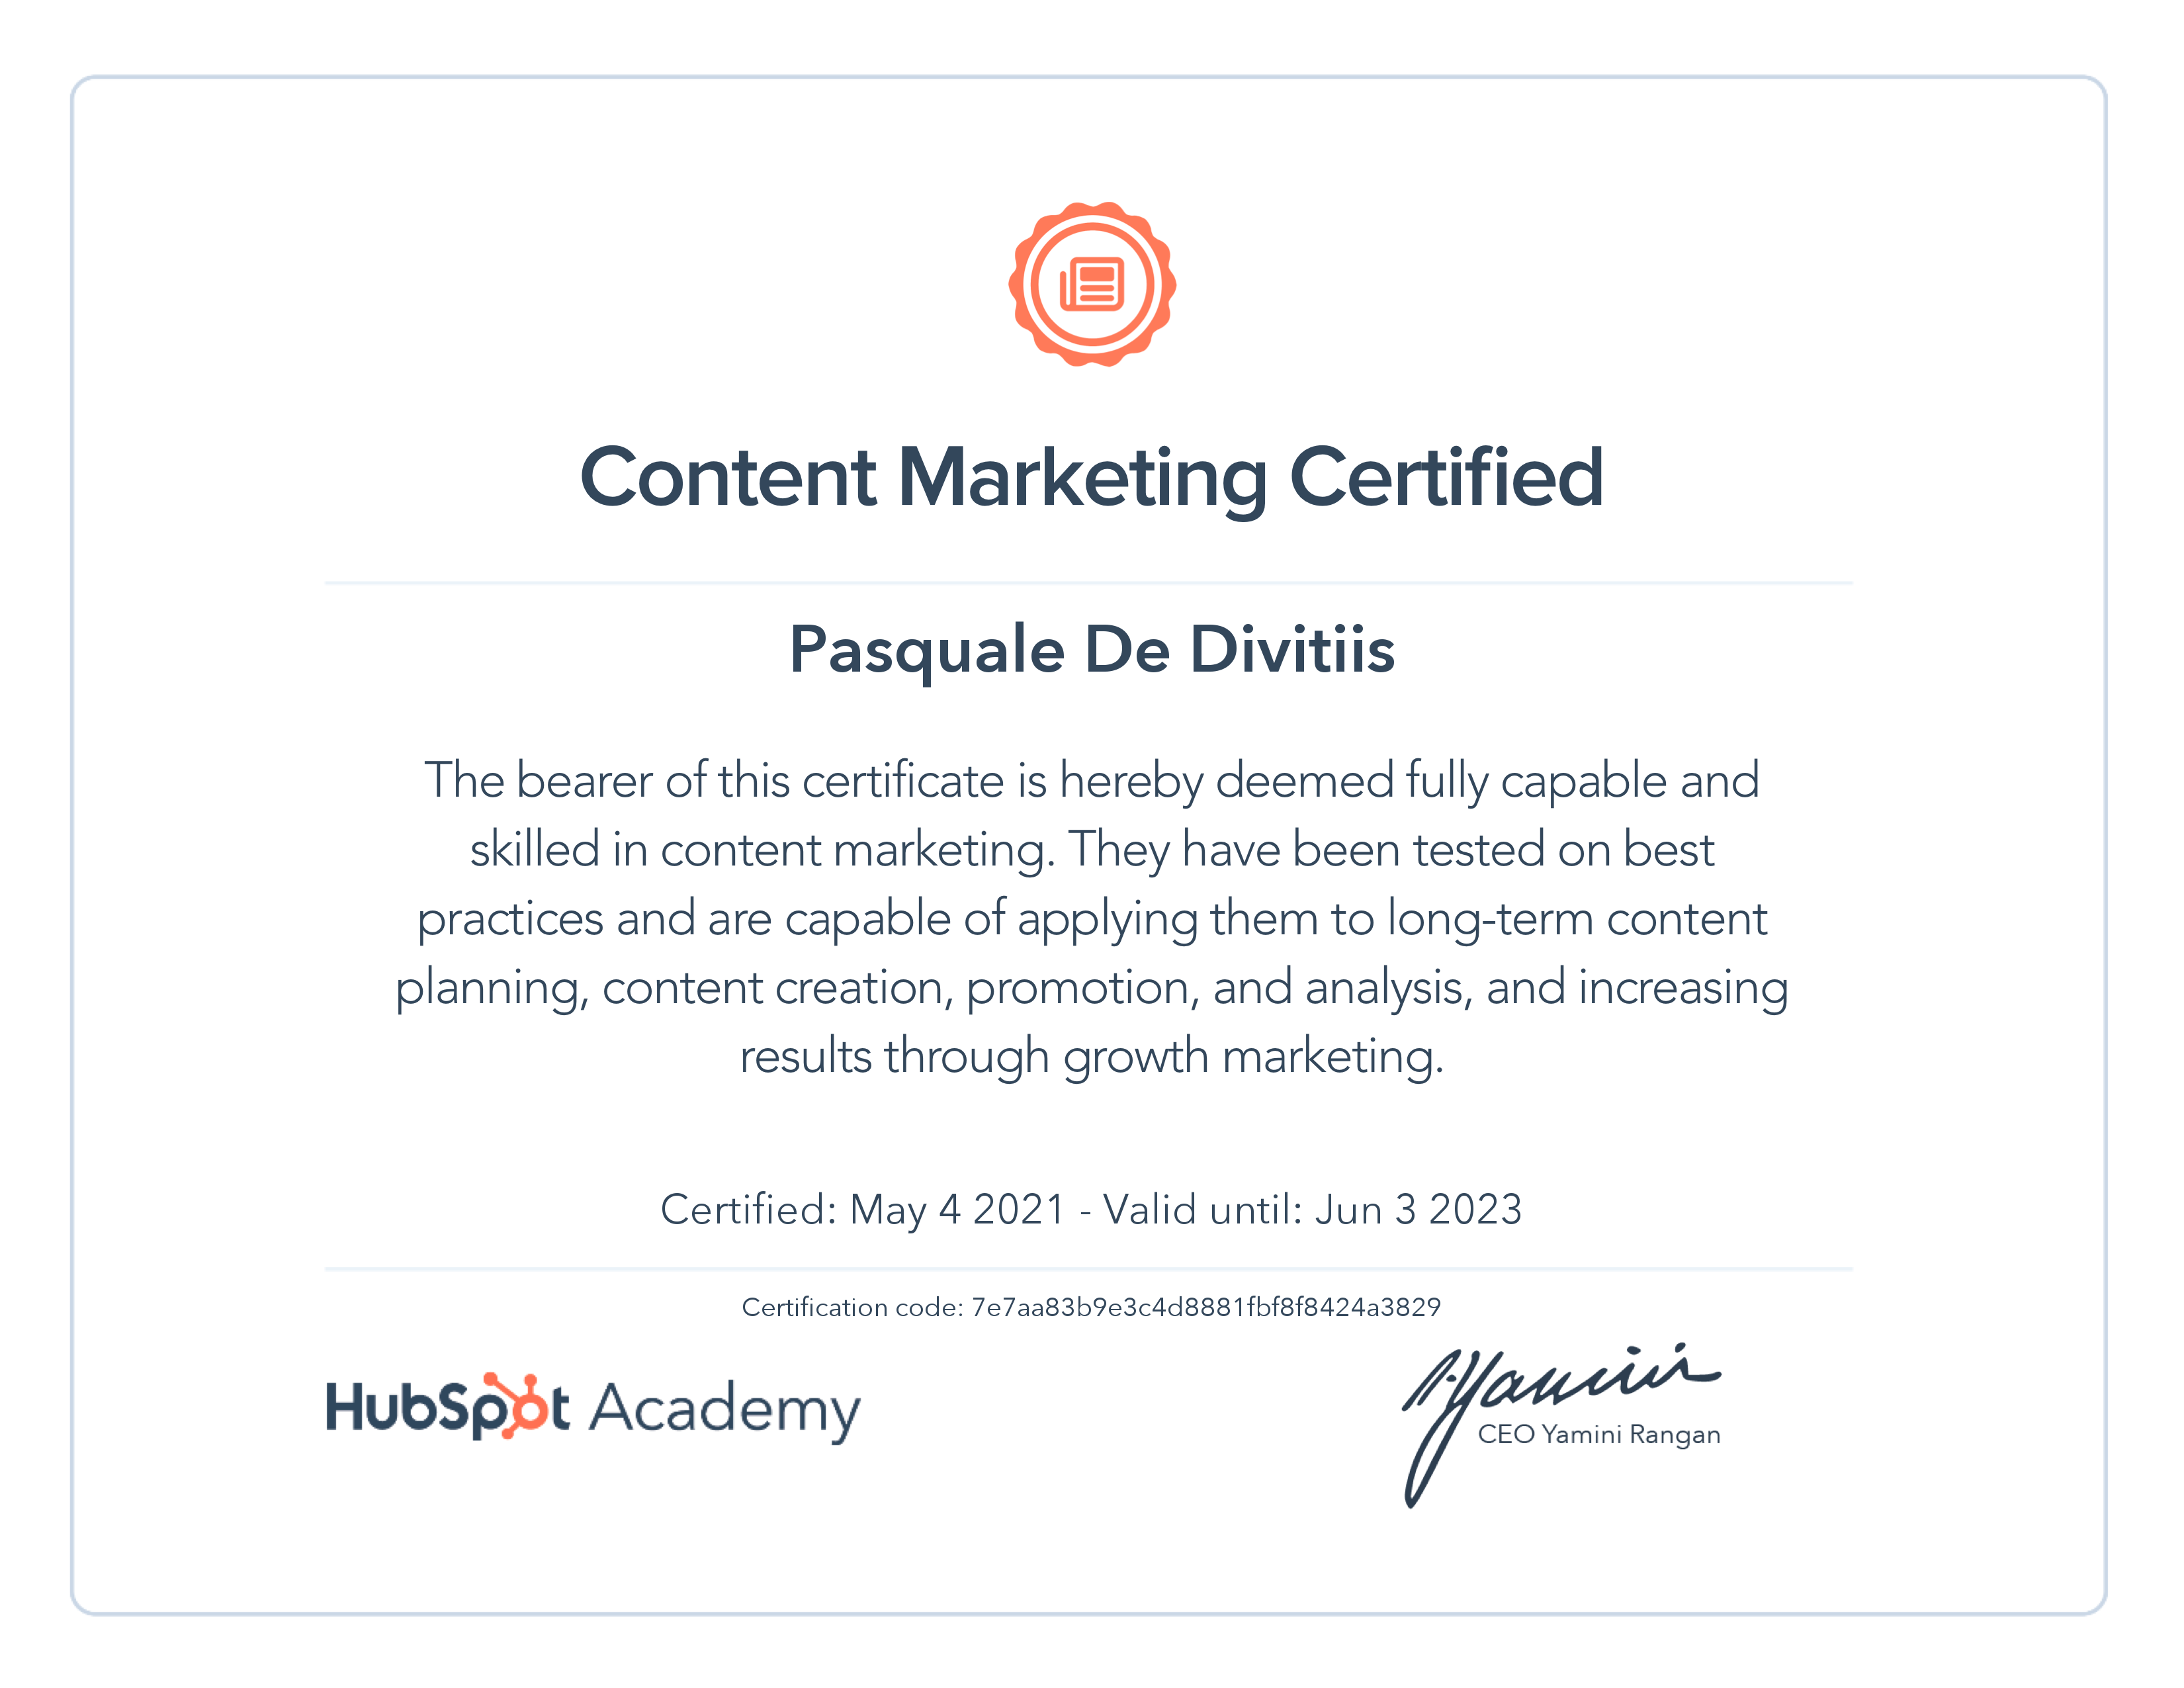 HubSpot Academy / Content Marketing Certification 